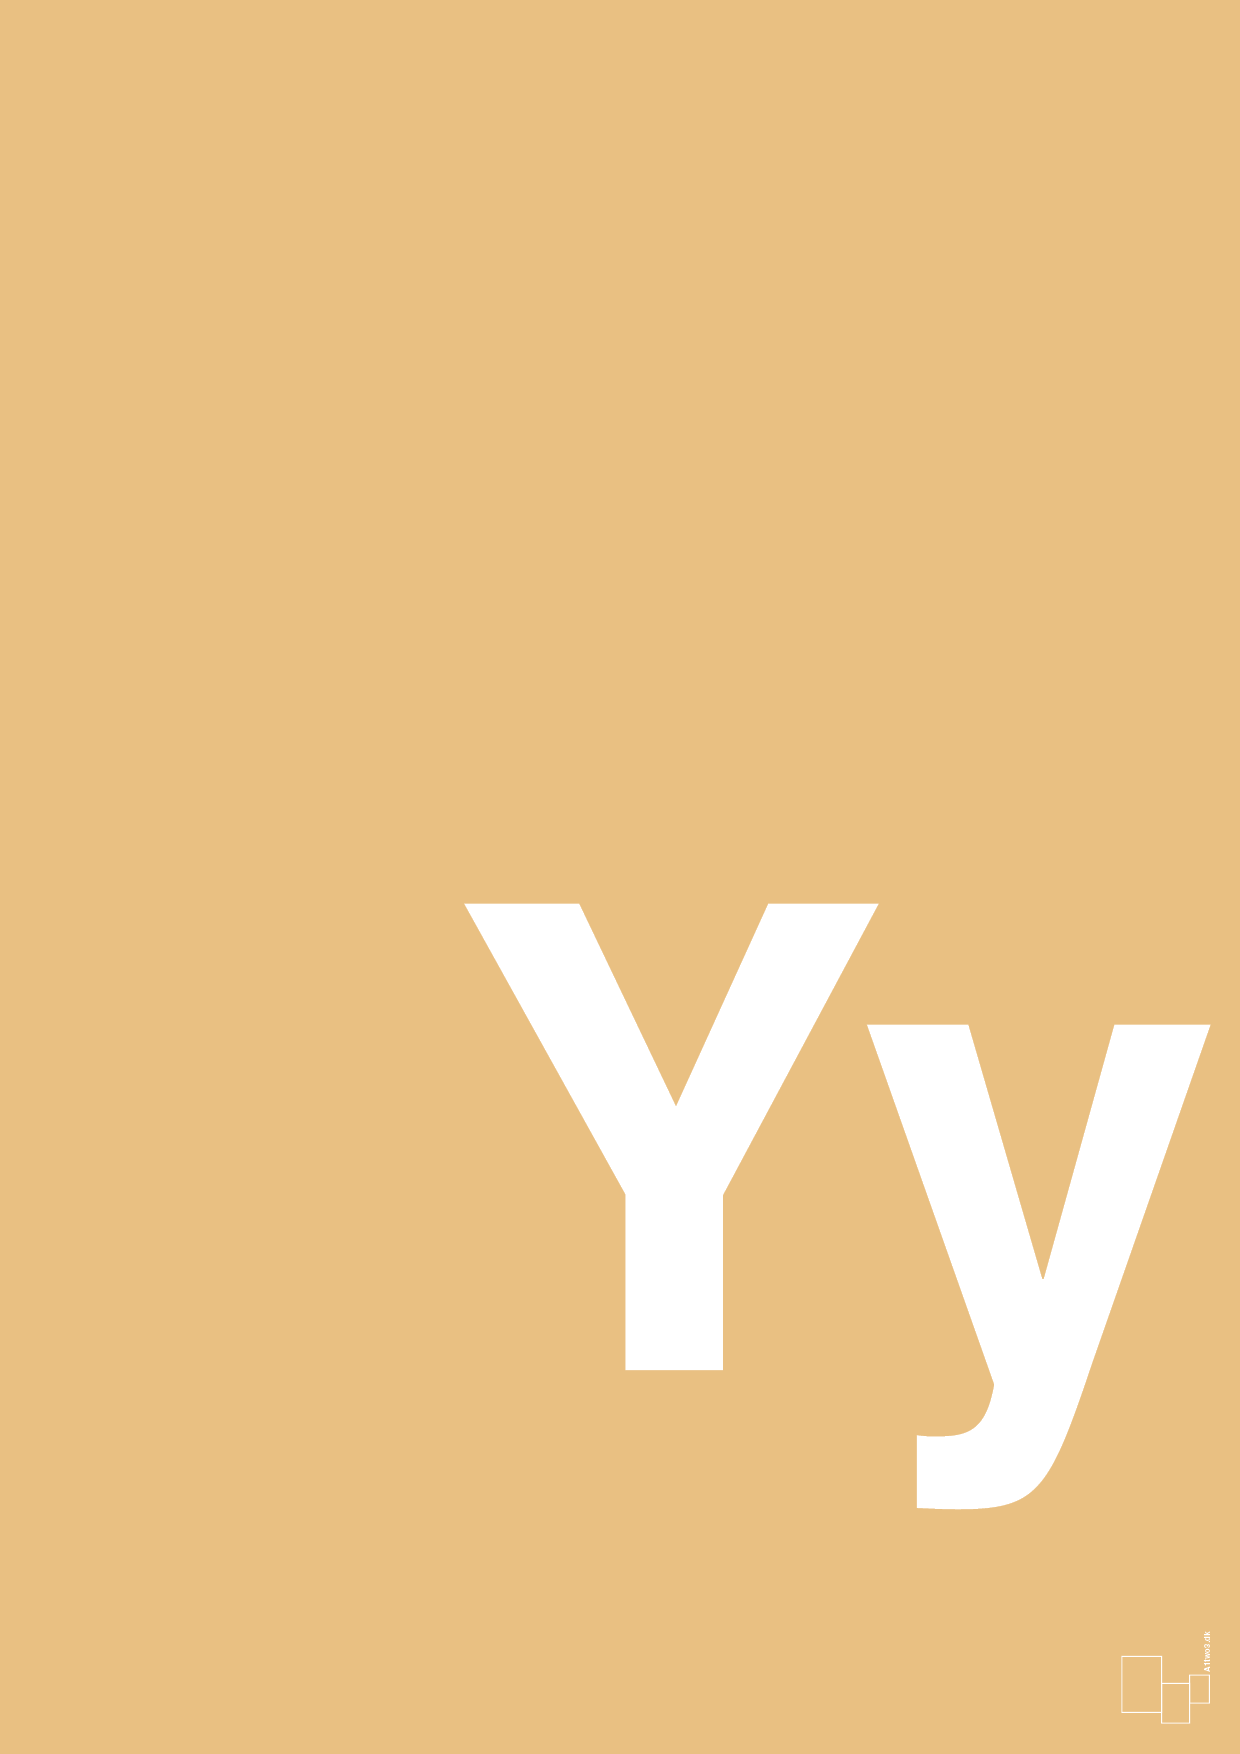 bogstav yy - Plakat med Bogstaver i Charismatic